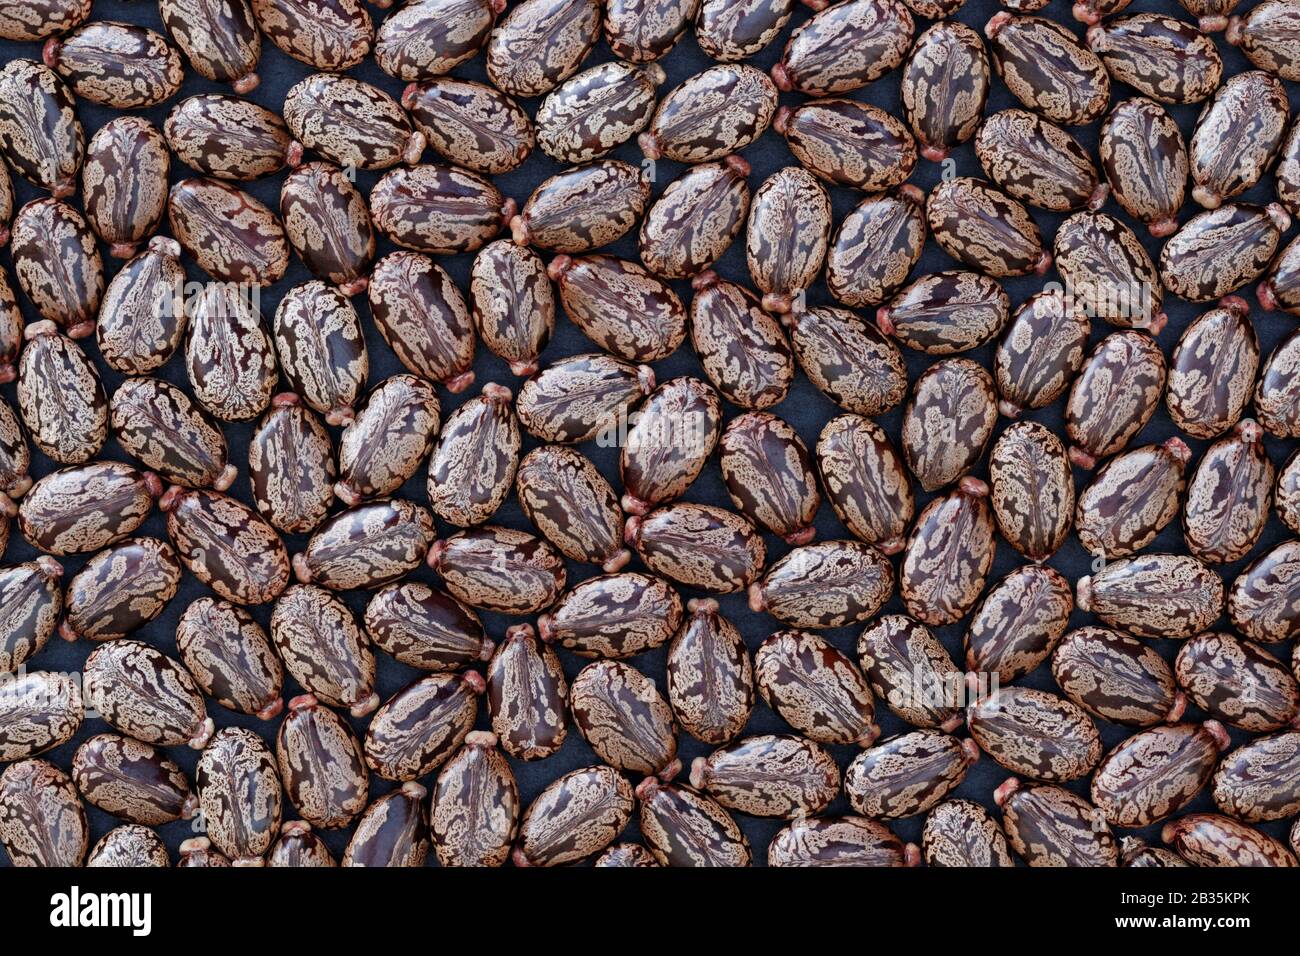 Graines de Castor Bean (Ricinus communis) - contexte: Accumulation de graines de caste (ricinus communis) sur fond sombre Banque D'Images